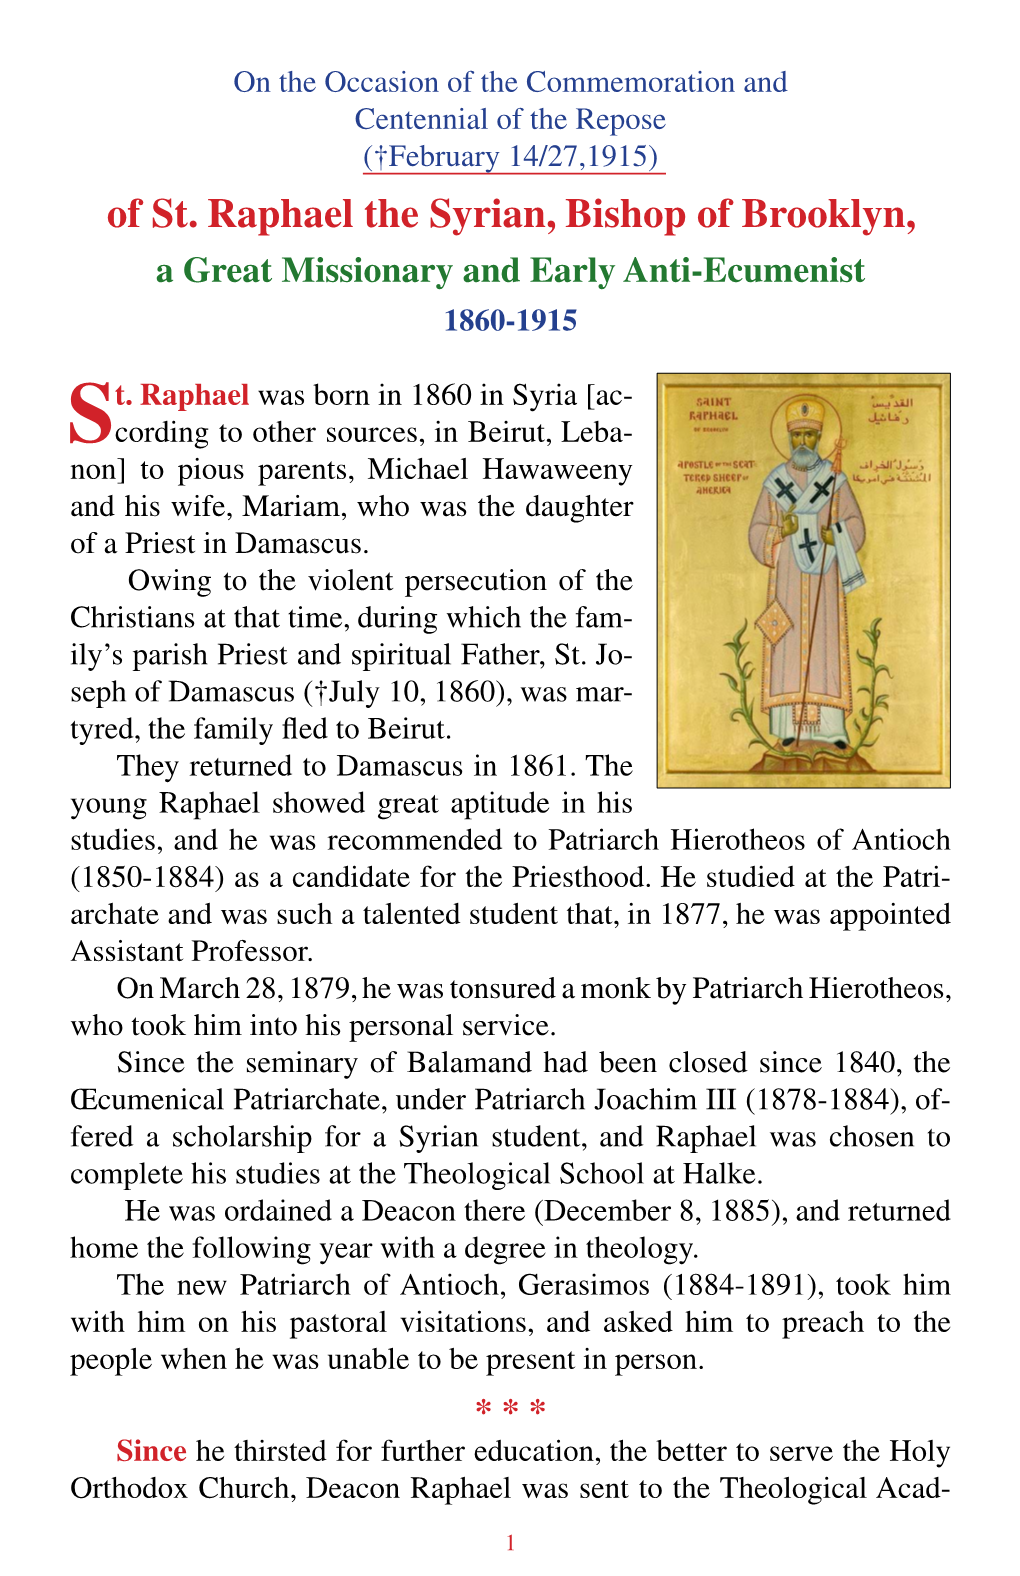 St. Raphael of Brooklyn